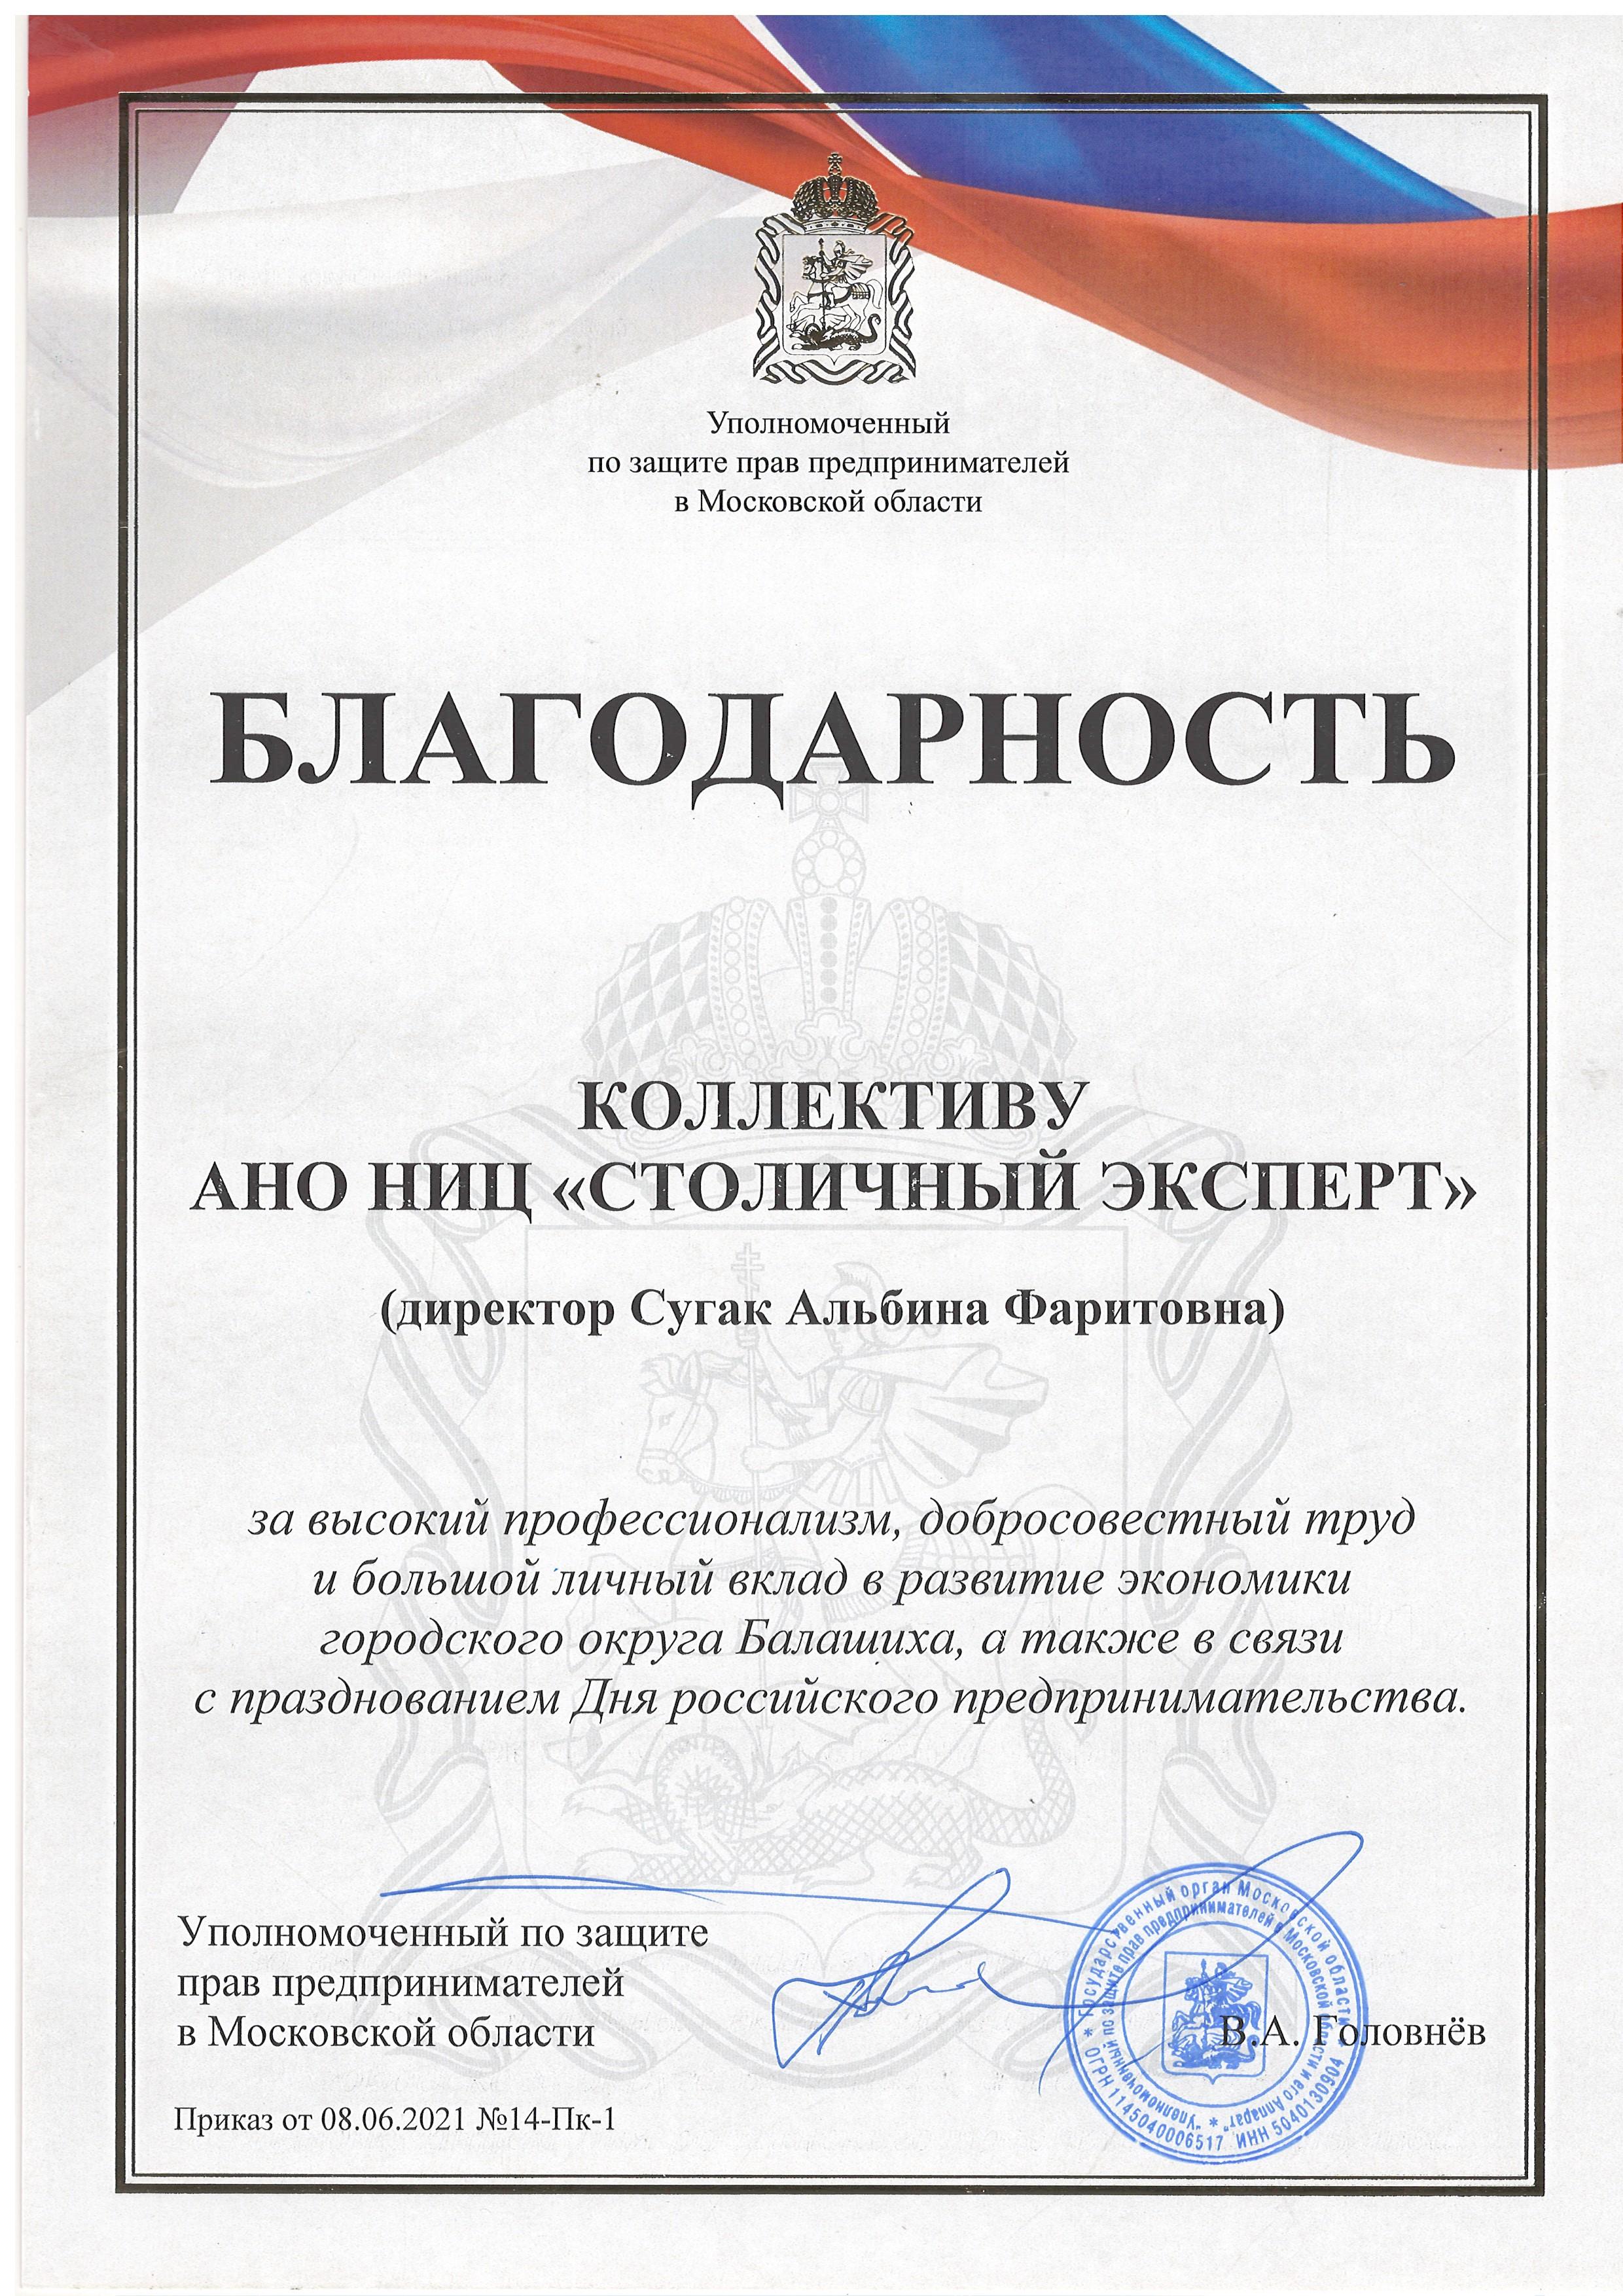 Благодарность от Уполномоченного по защите прав потребителей Московской области